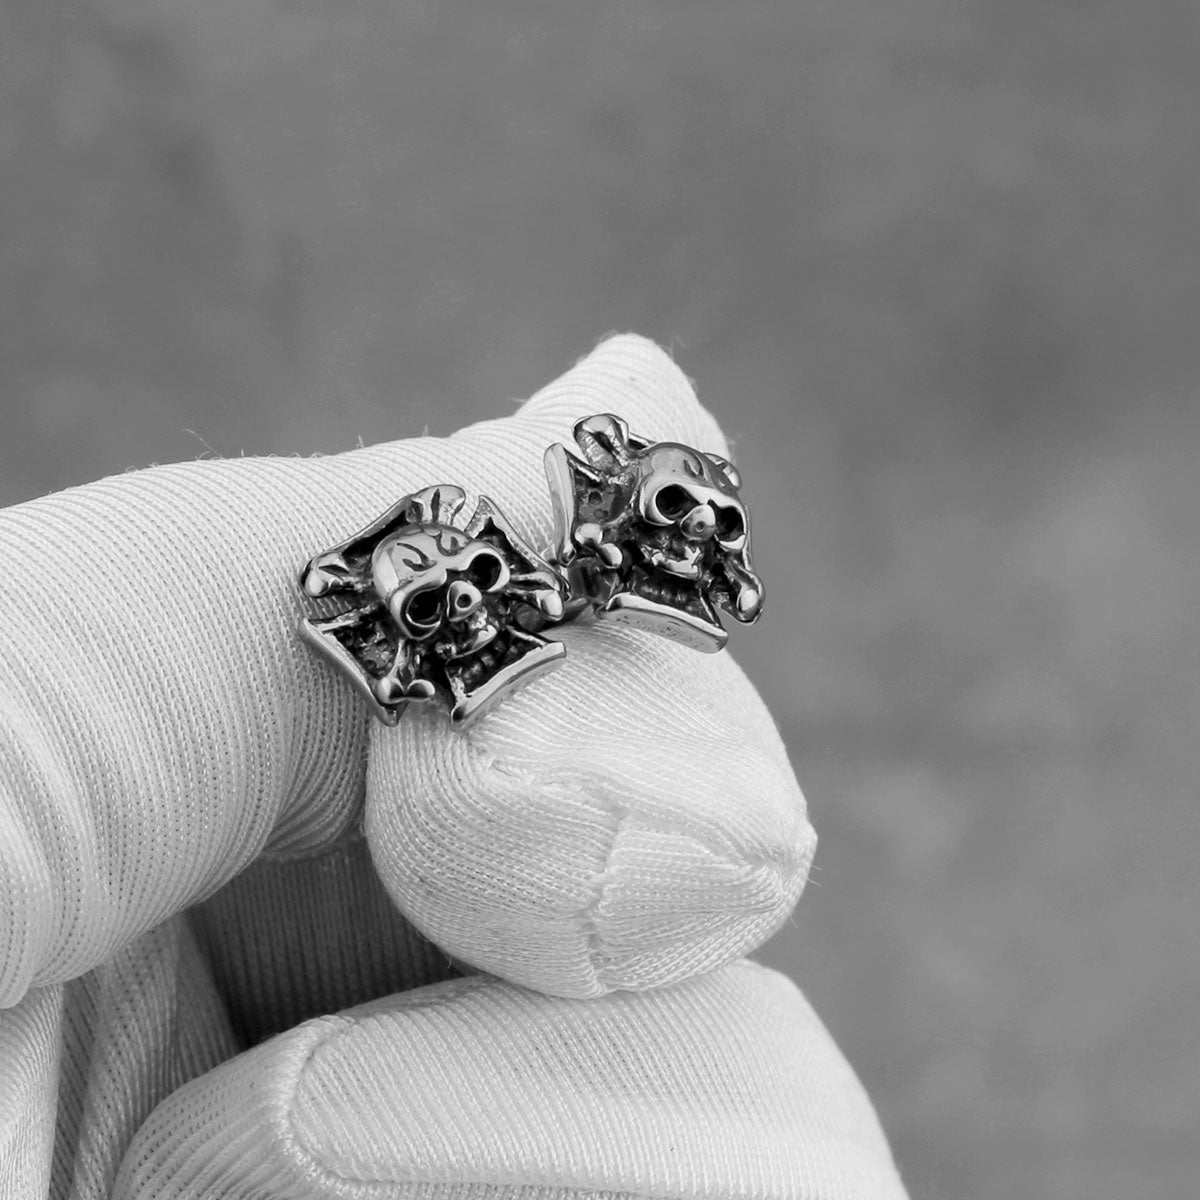 Neo-Gothic Cross Skull Stud Earrings - Stainless Steel Punk Rock Men's Jewelry